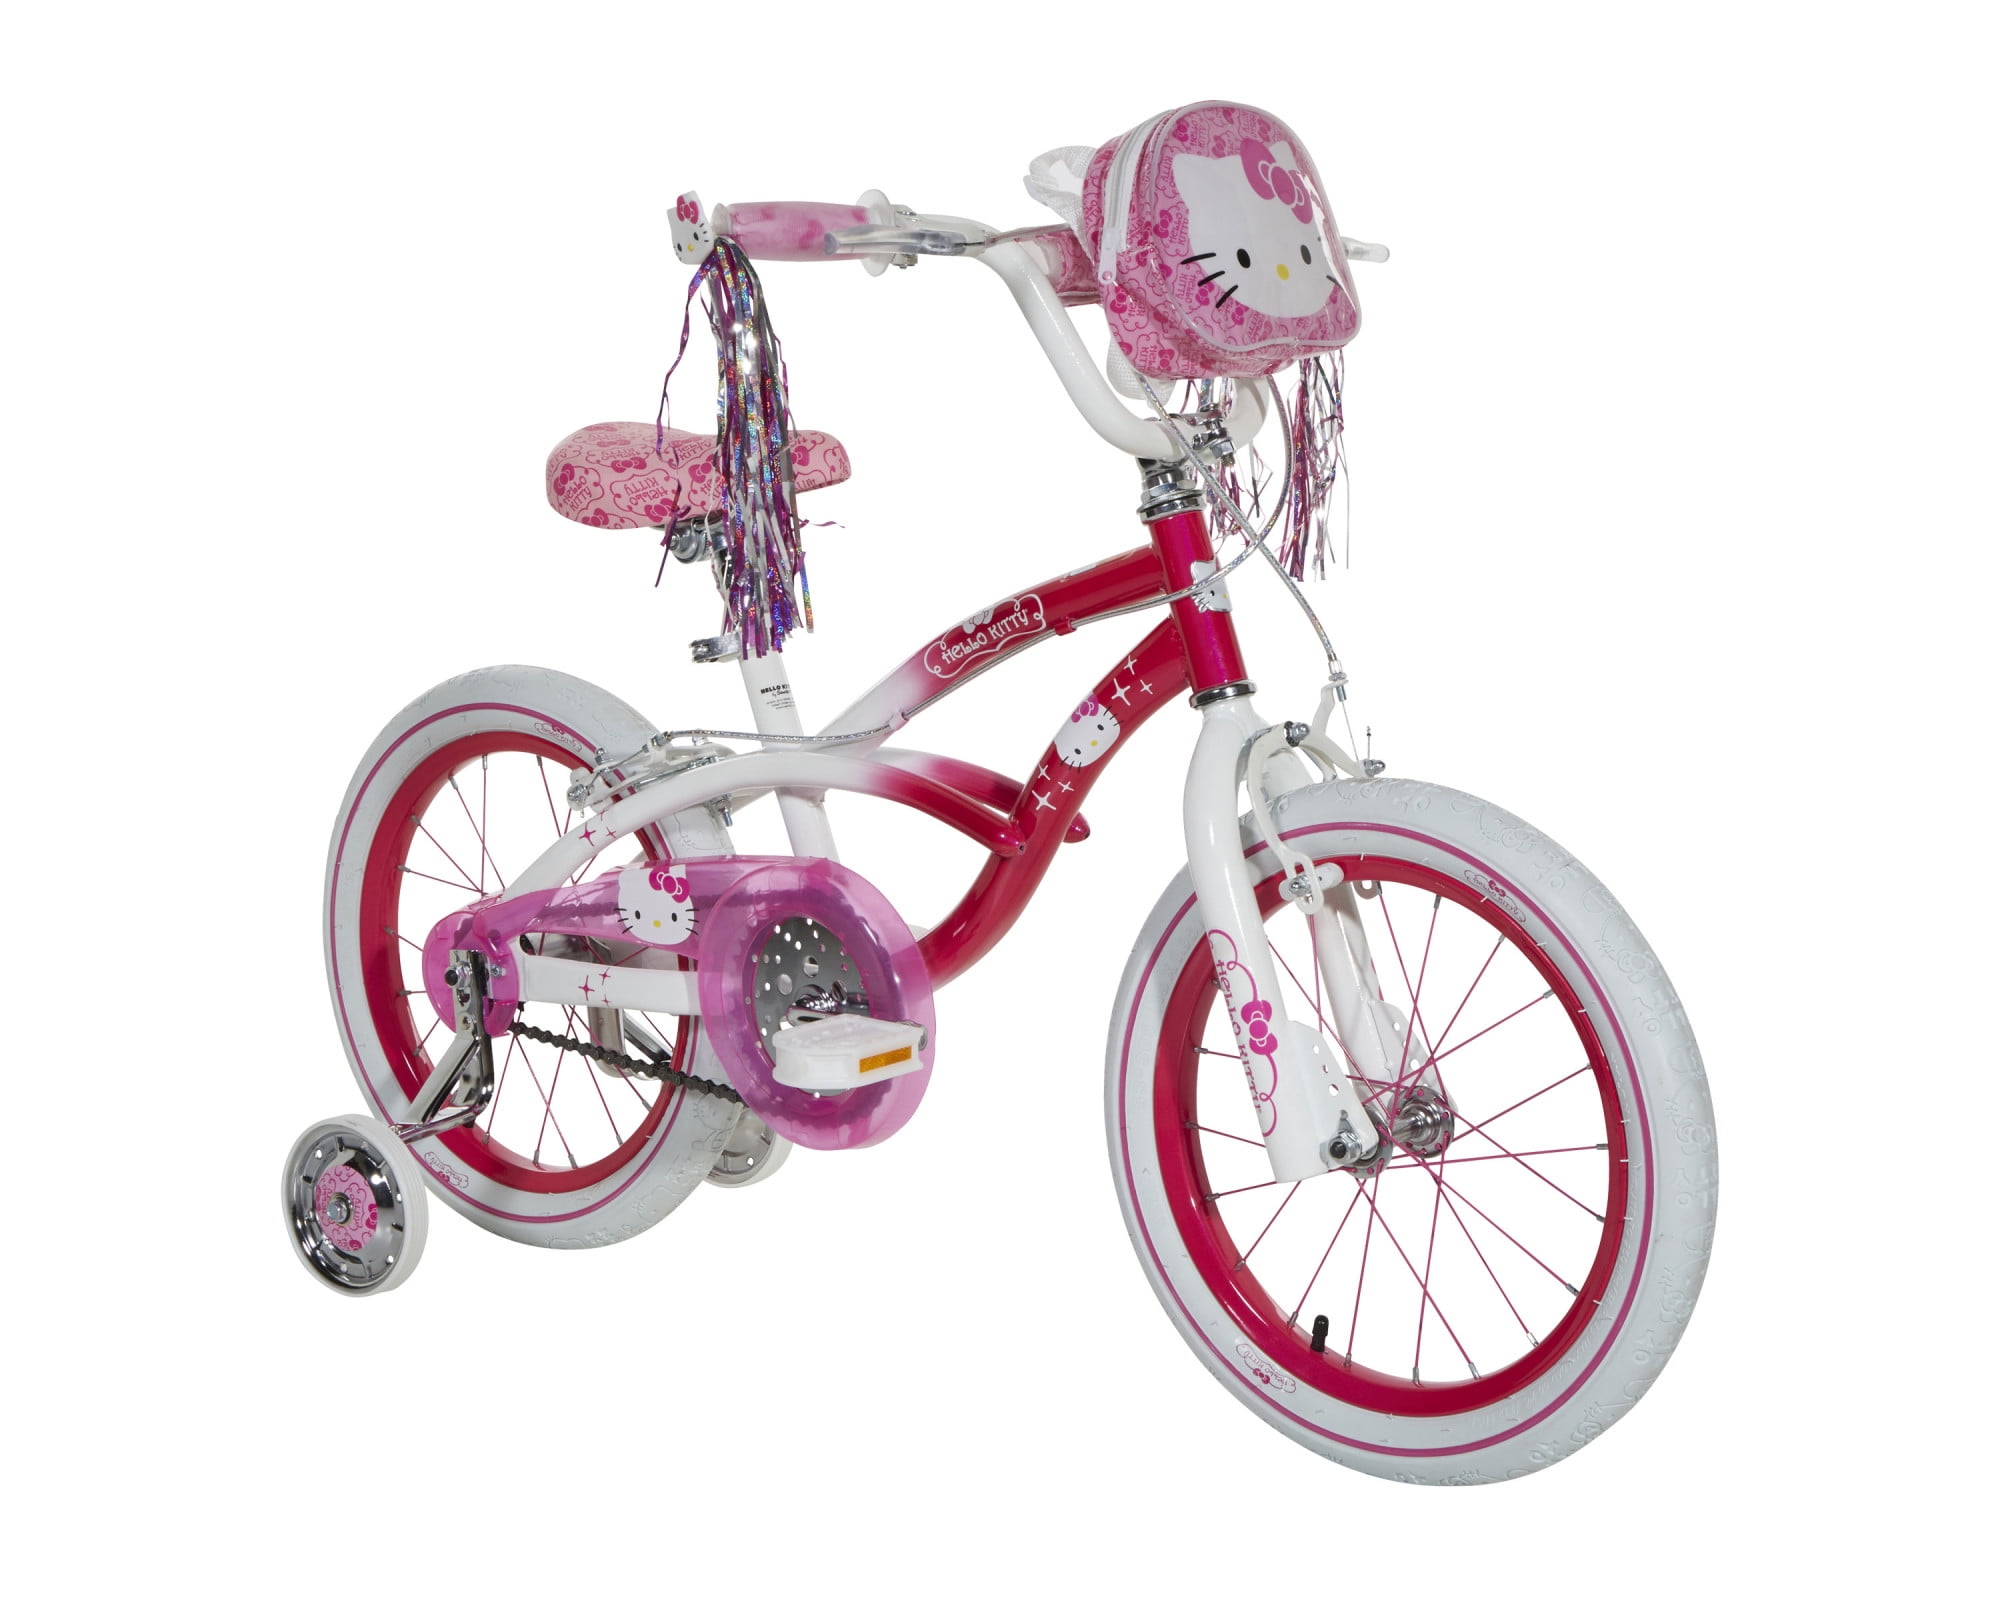 XN-15-20 Kids Freestyle BMX Bike Girls 20" Wheel 25-9t Gearing Bicycle PINK 